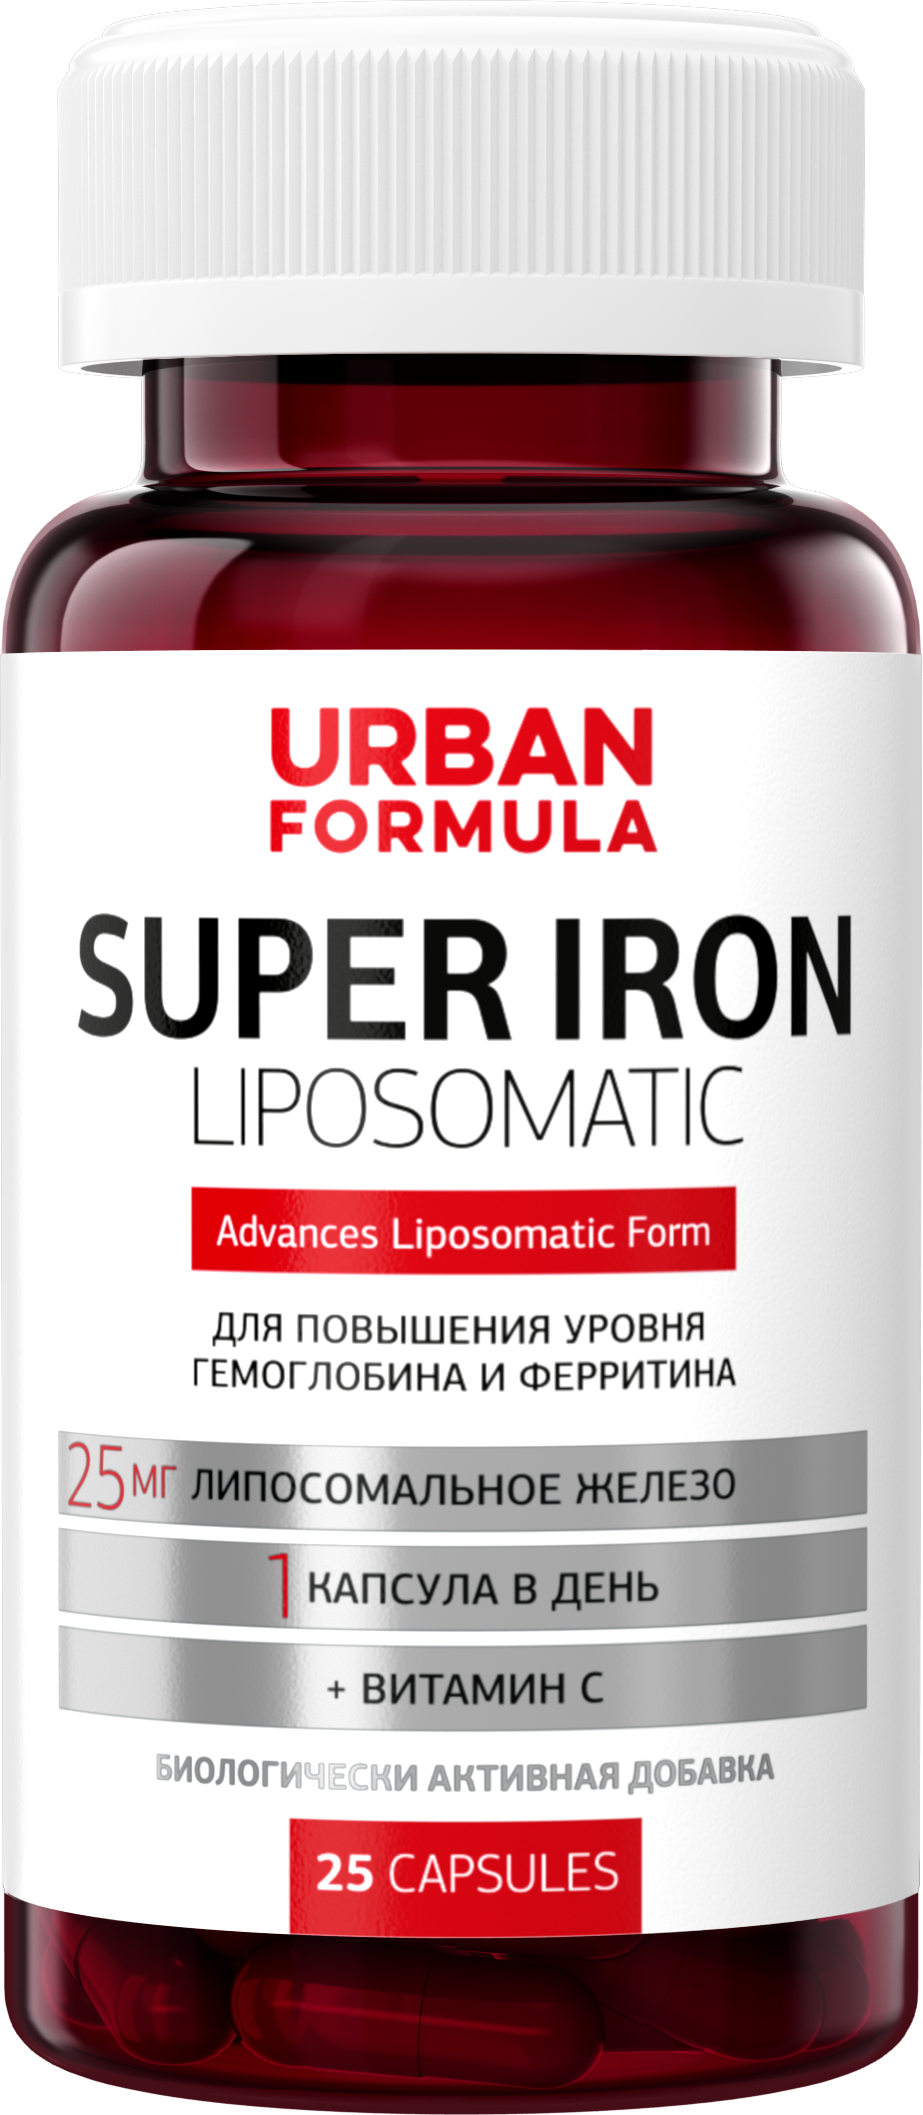 Super Iron